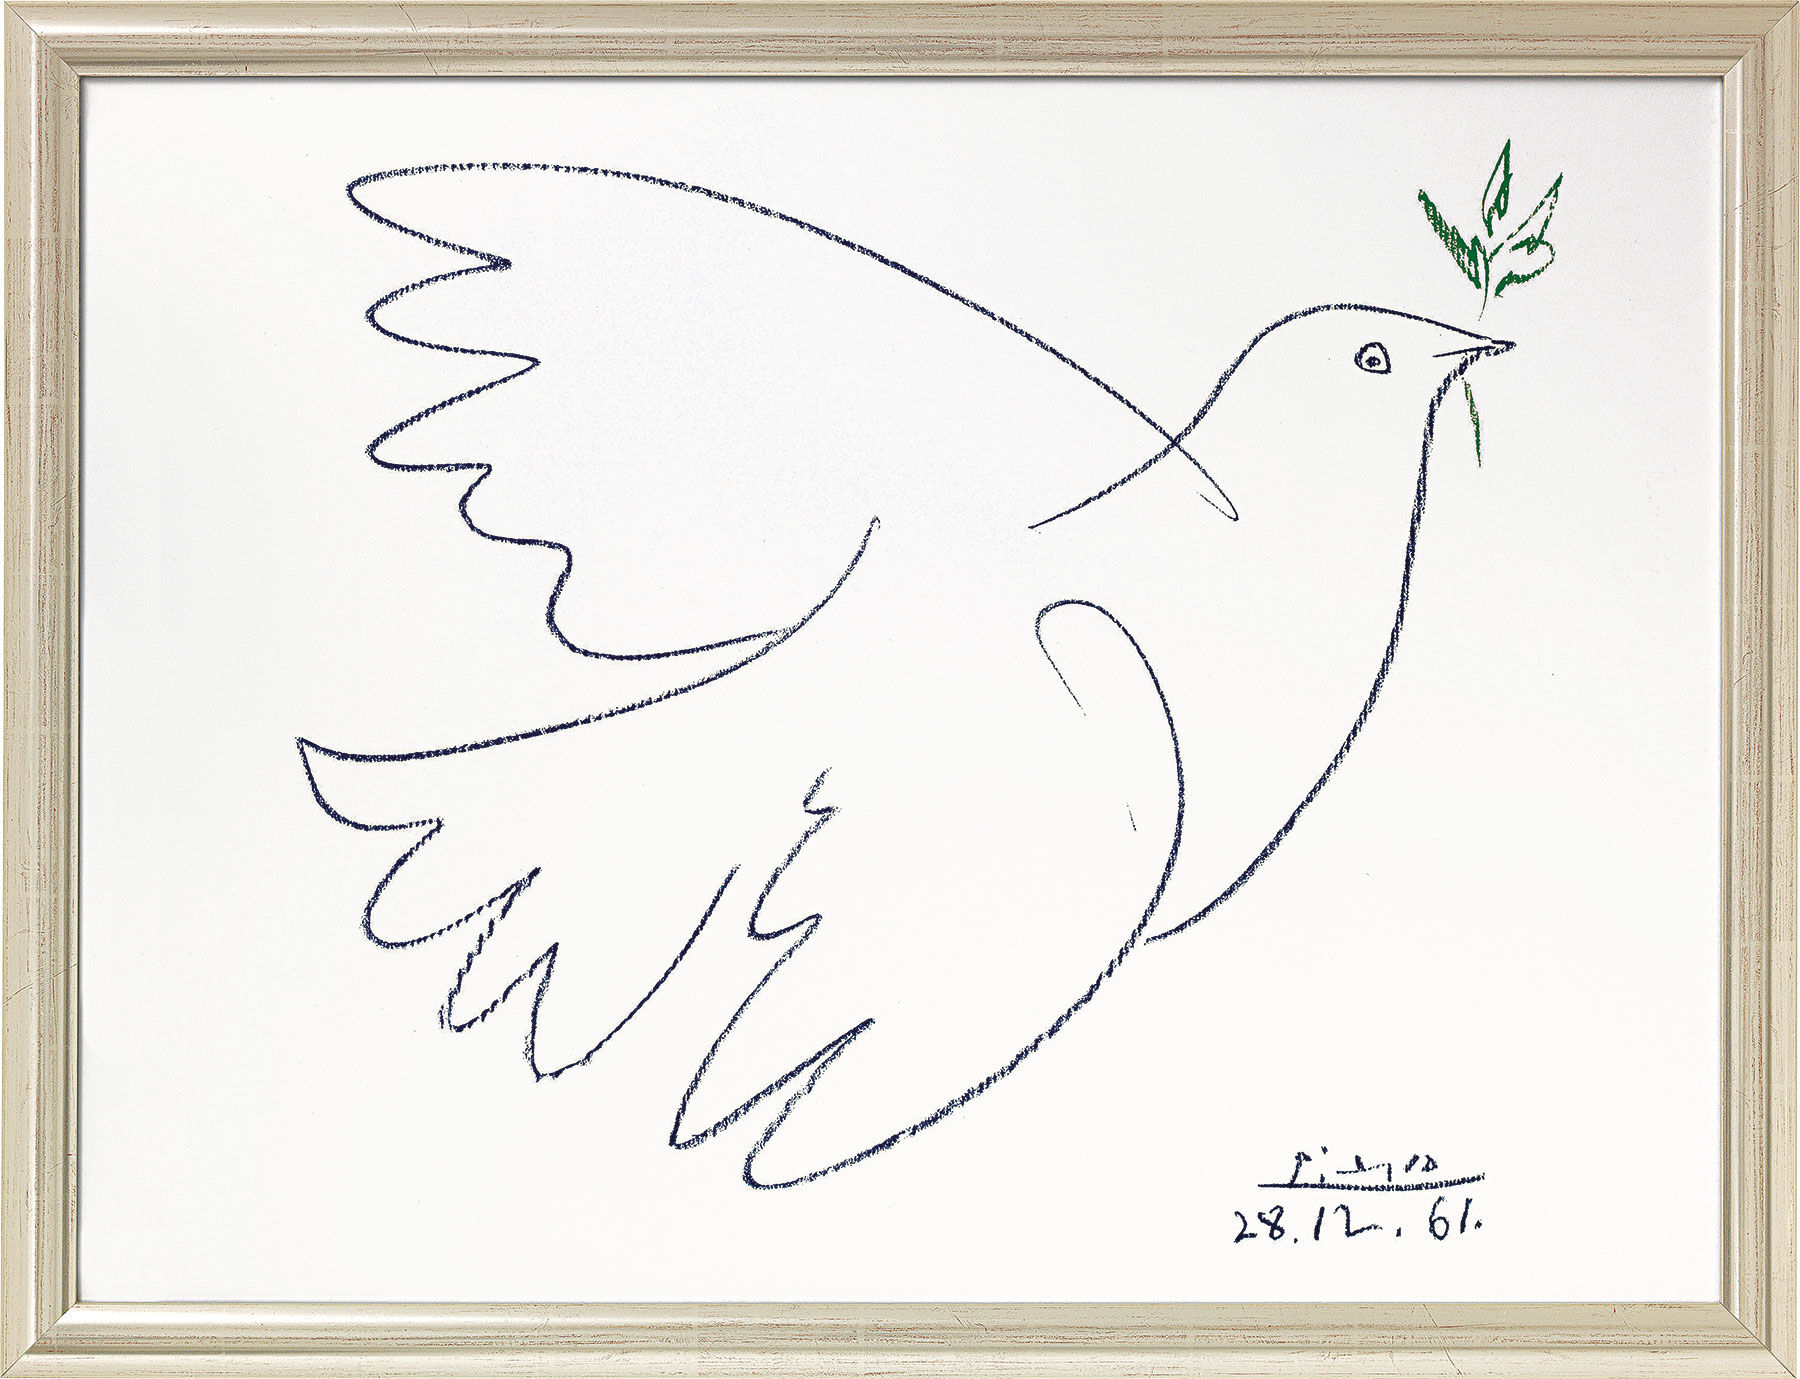 Gemälde "Friedenstaube" (1961), gerahmt - Pablo Picasso